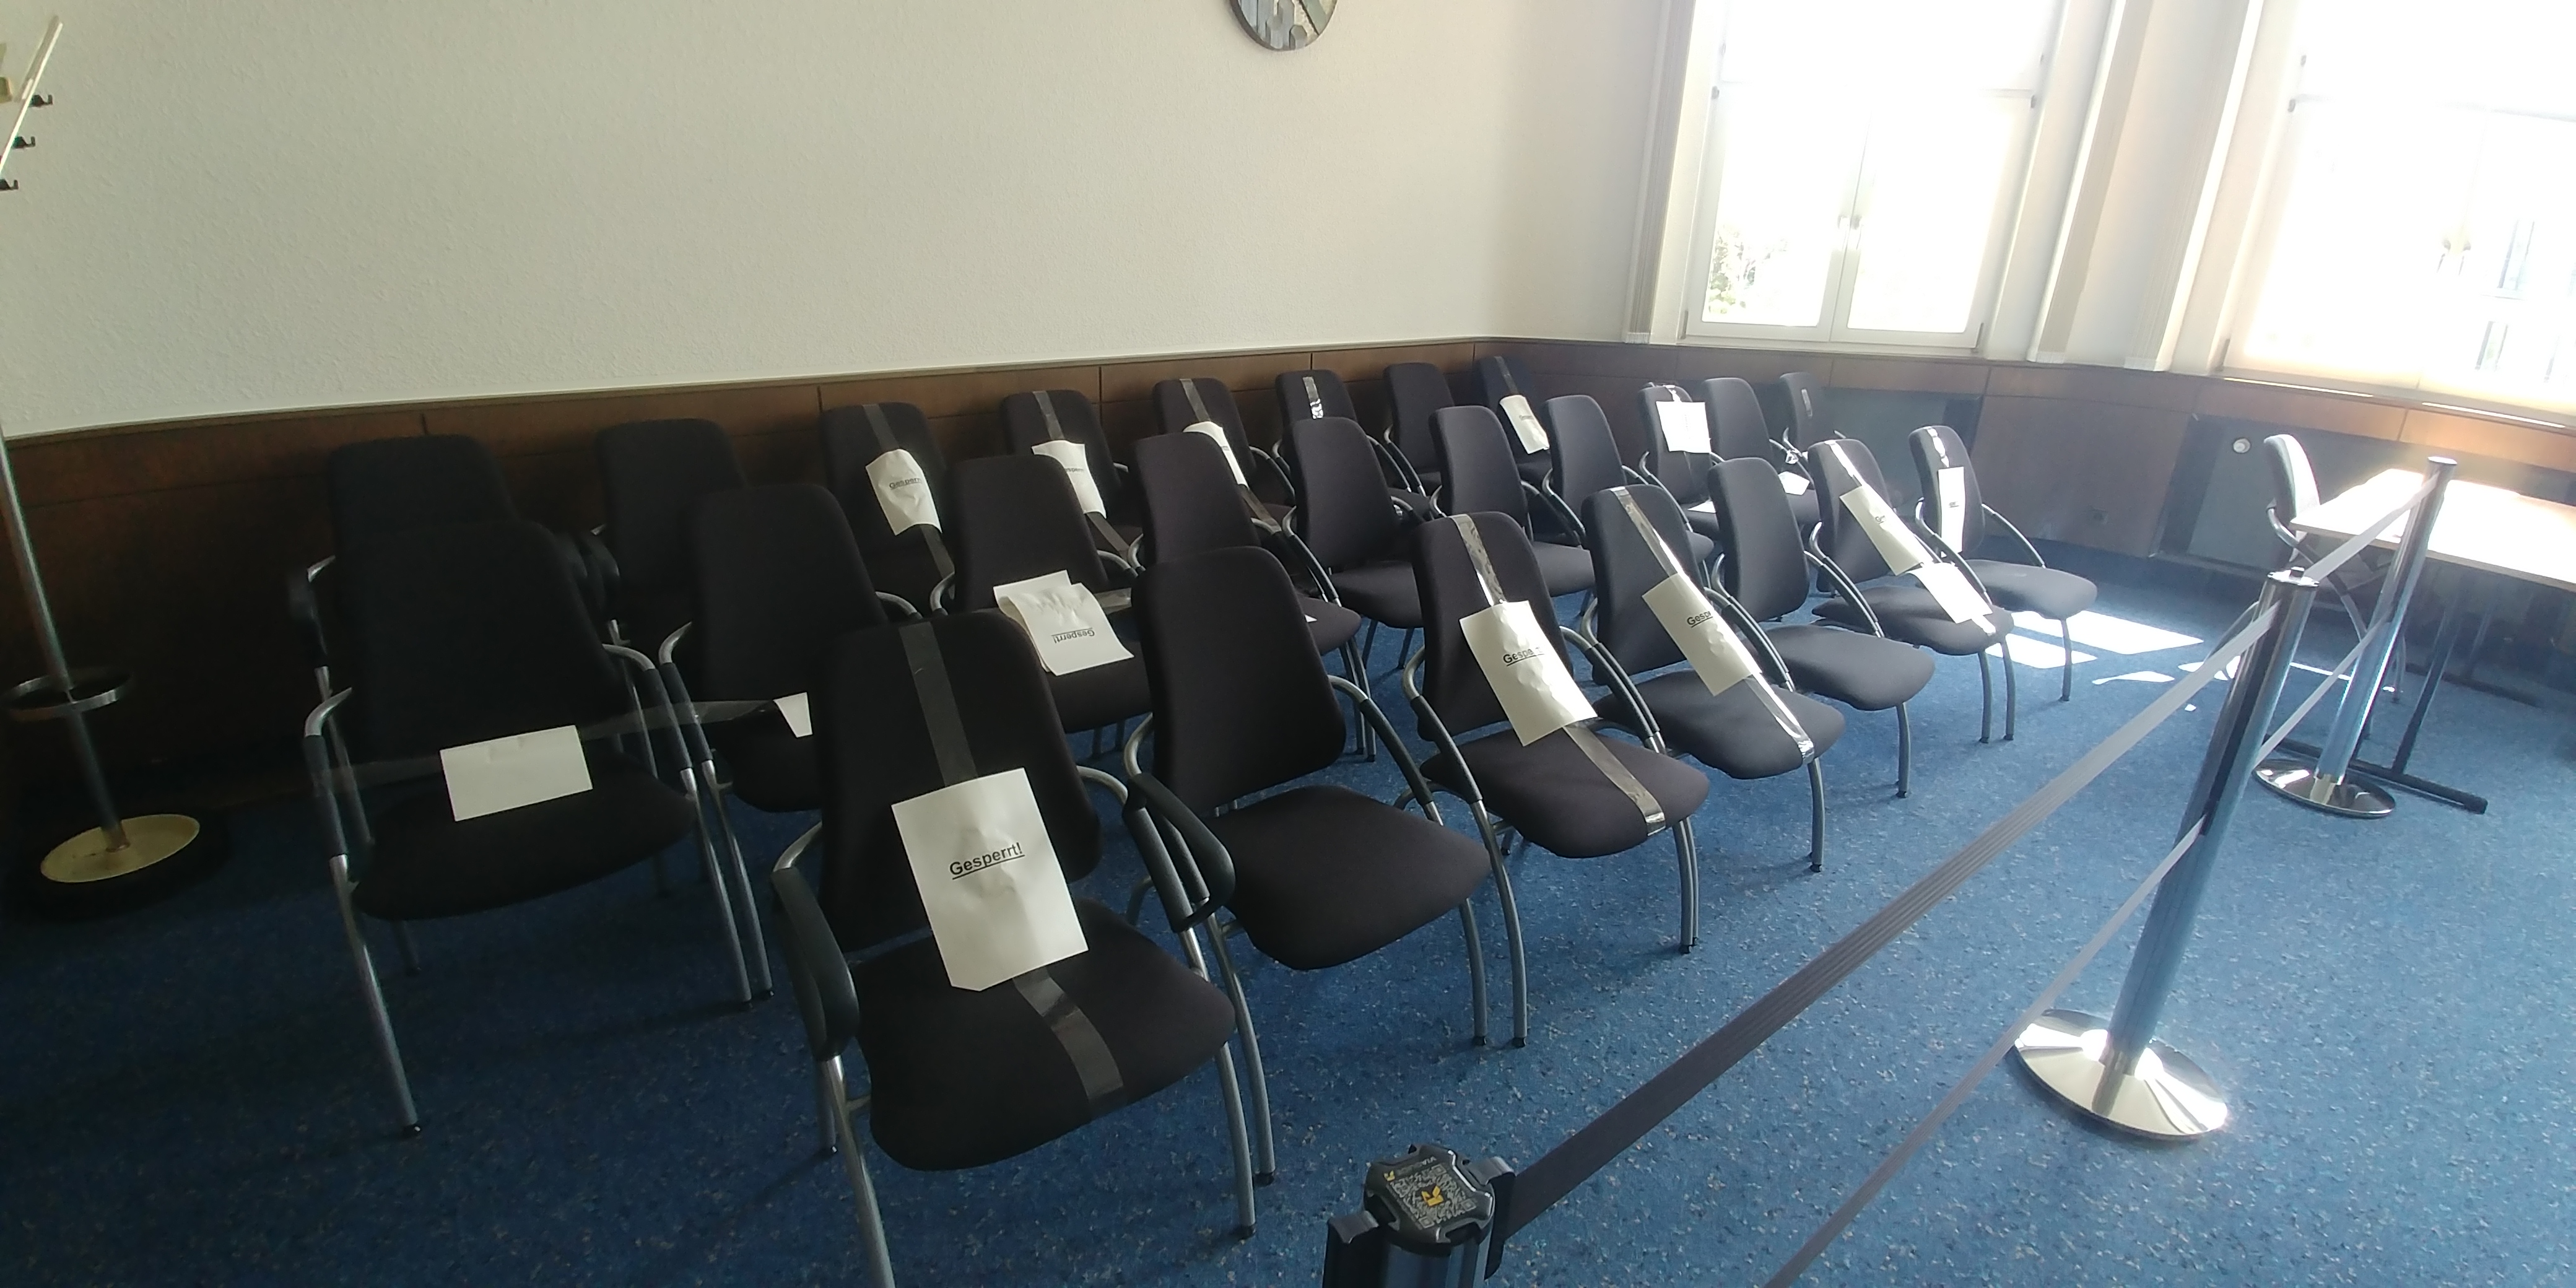 Bild von einem Sitzungssaal mit gesperrten Stühlen wegen Corona